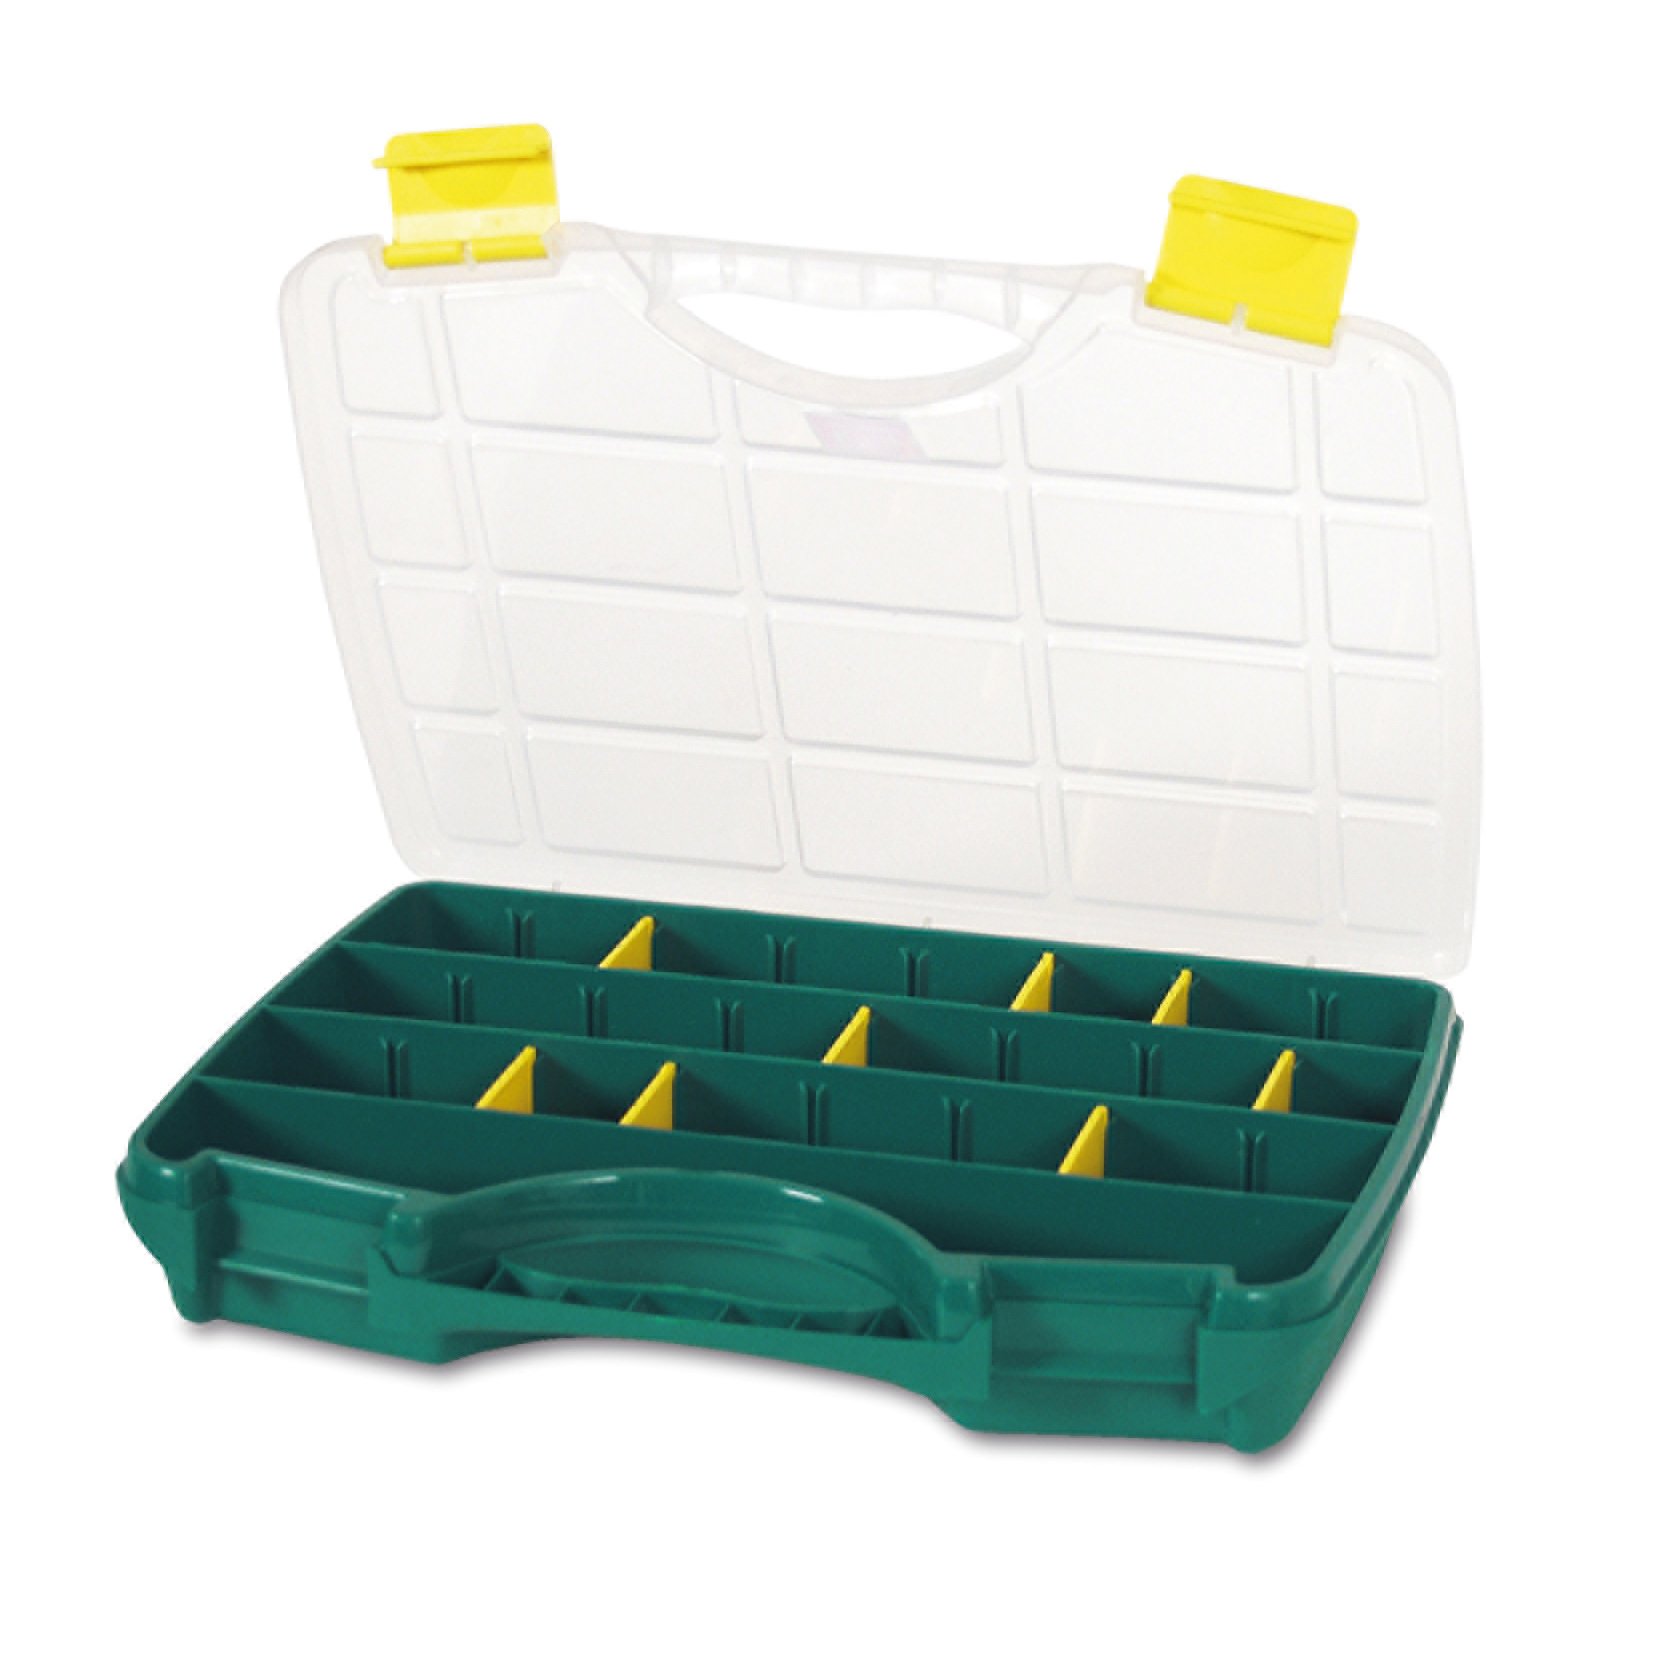 Органайзер Tayg Box 22-26 Estuche, для хранения мелких предметов, 31,2х23,8х5,1 см, зеленый (022005) - фото 1